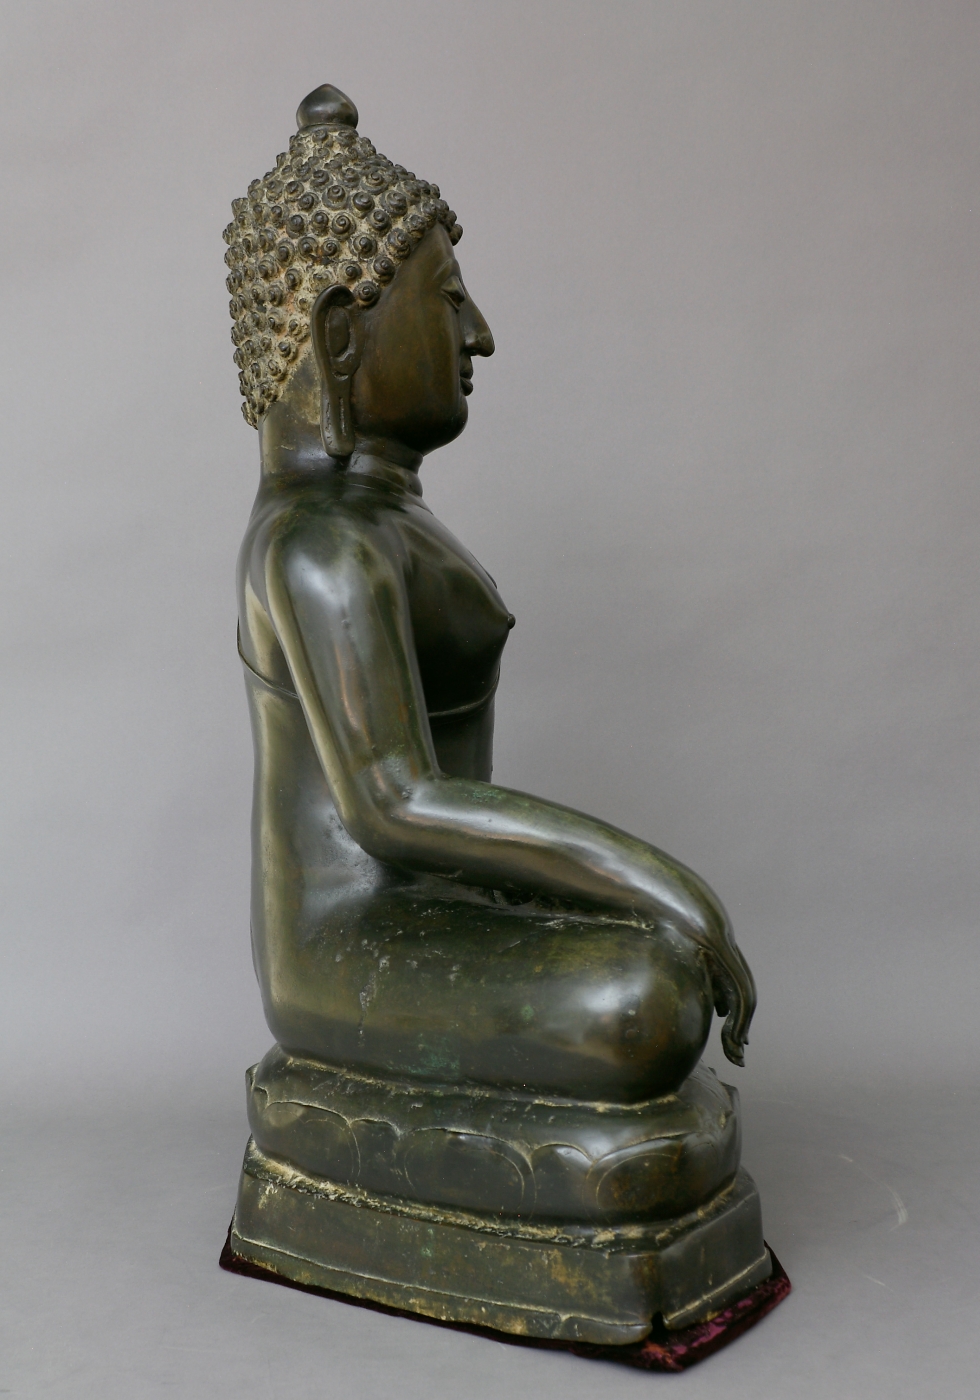 Auktionshaus Quentin Berlin  Asiatika Thailand  Buddha  Bronze